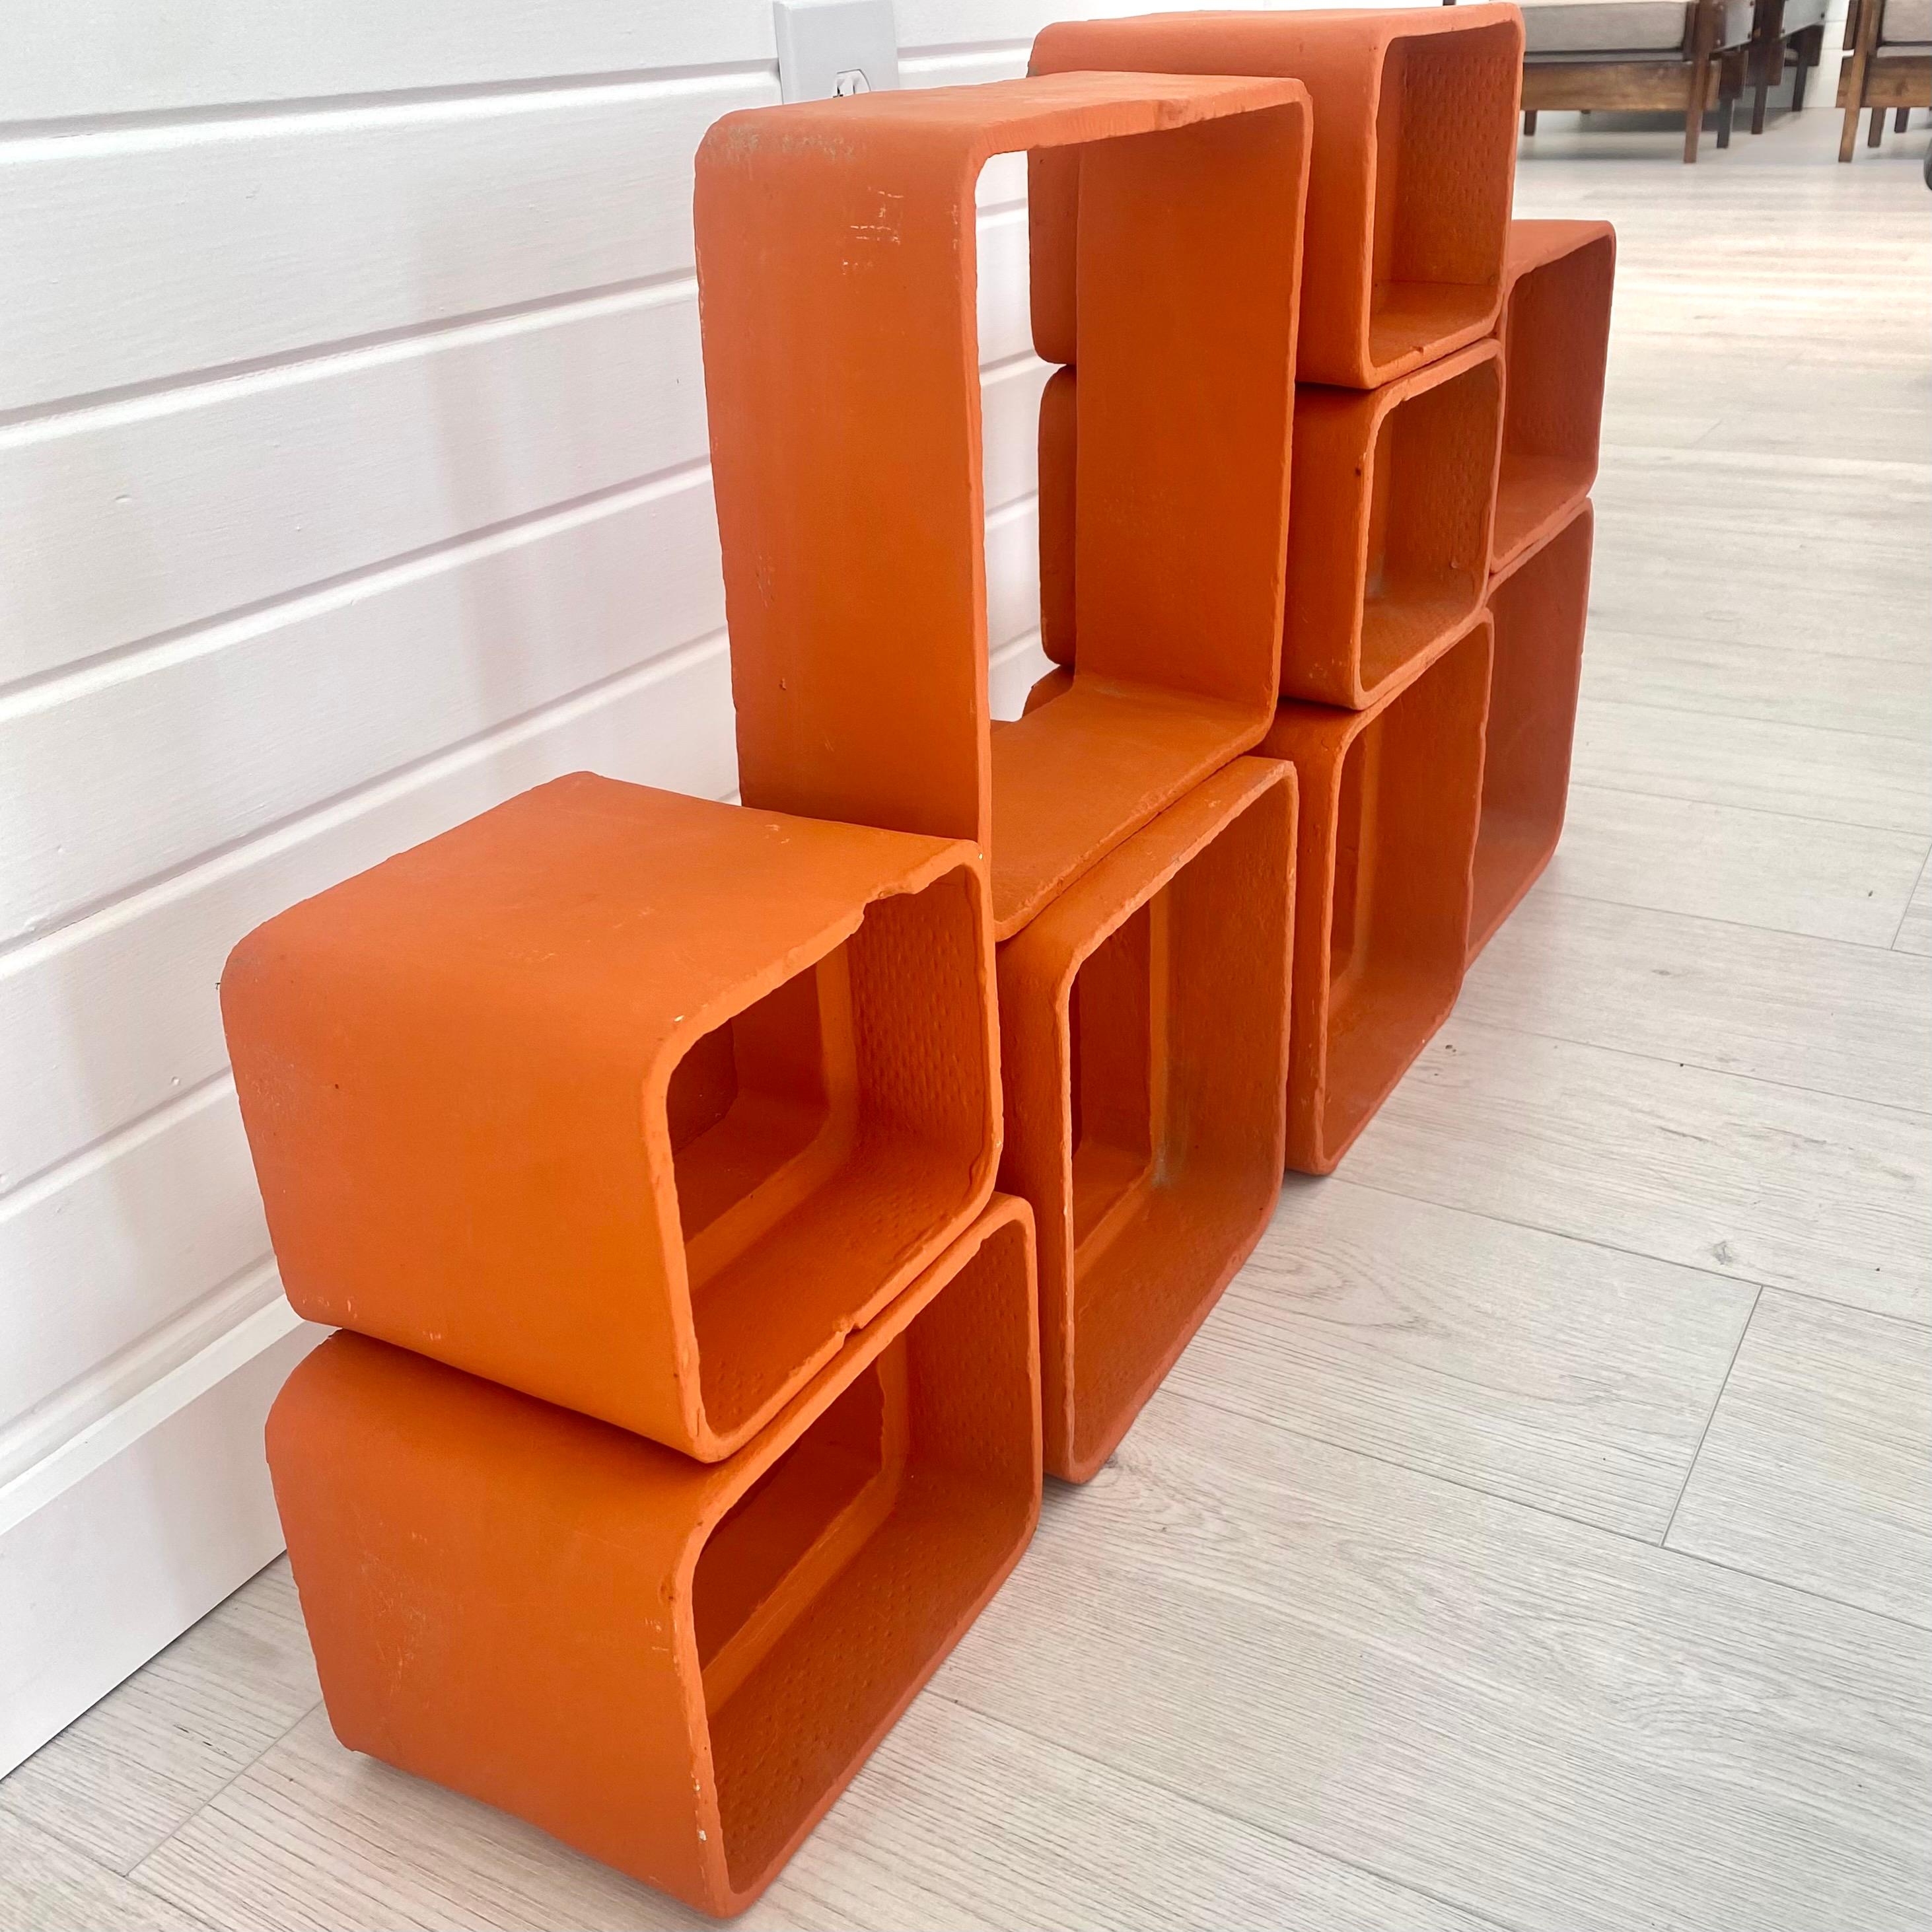 Willy Guhl Orange Concrete Bookcase, 1960s Switzerland For Sale 4